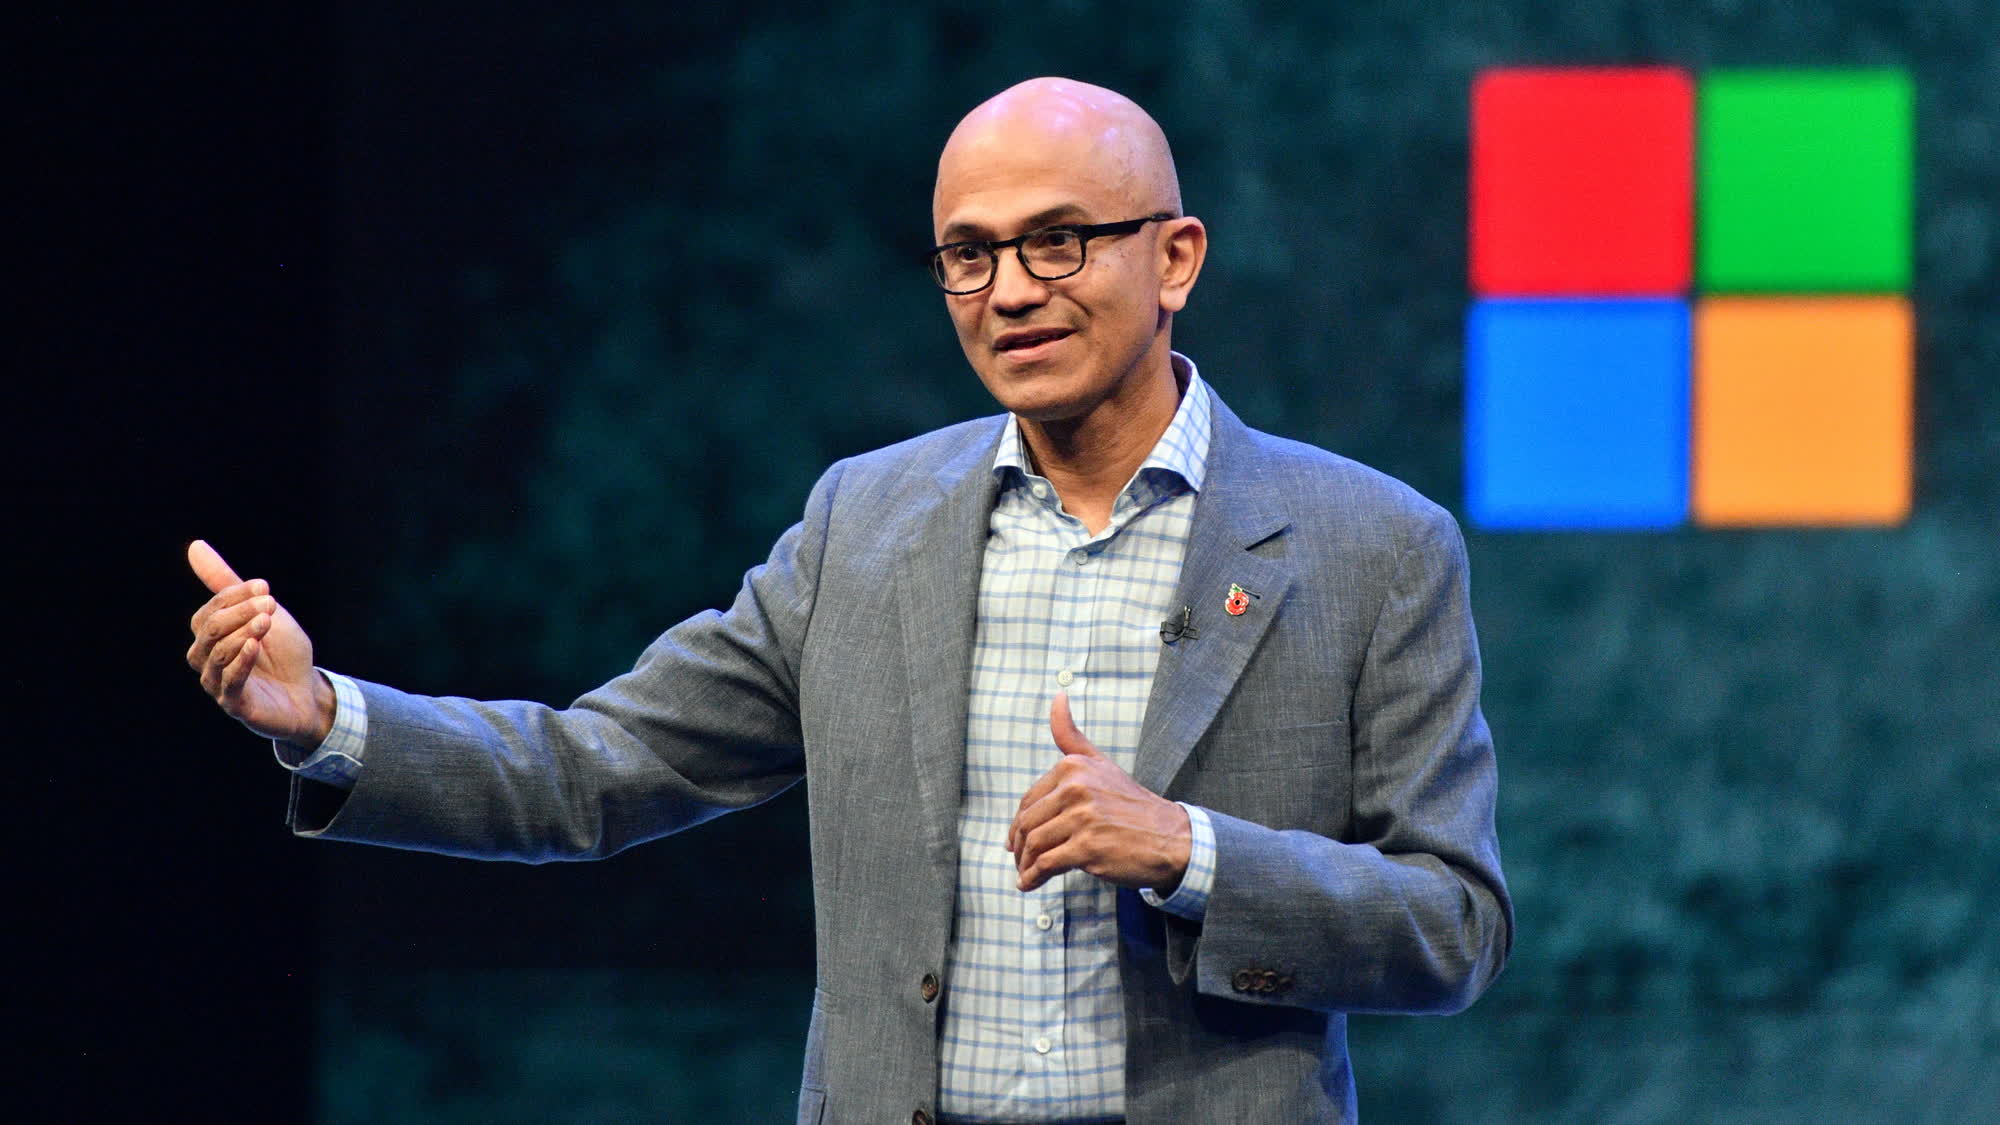 La valoración de Microsoft se ha multiplicado por 10 en los últimos 10 años bajo Satya Nadella